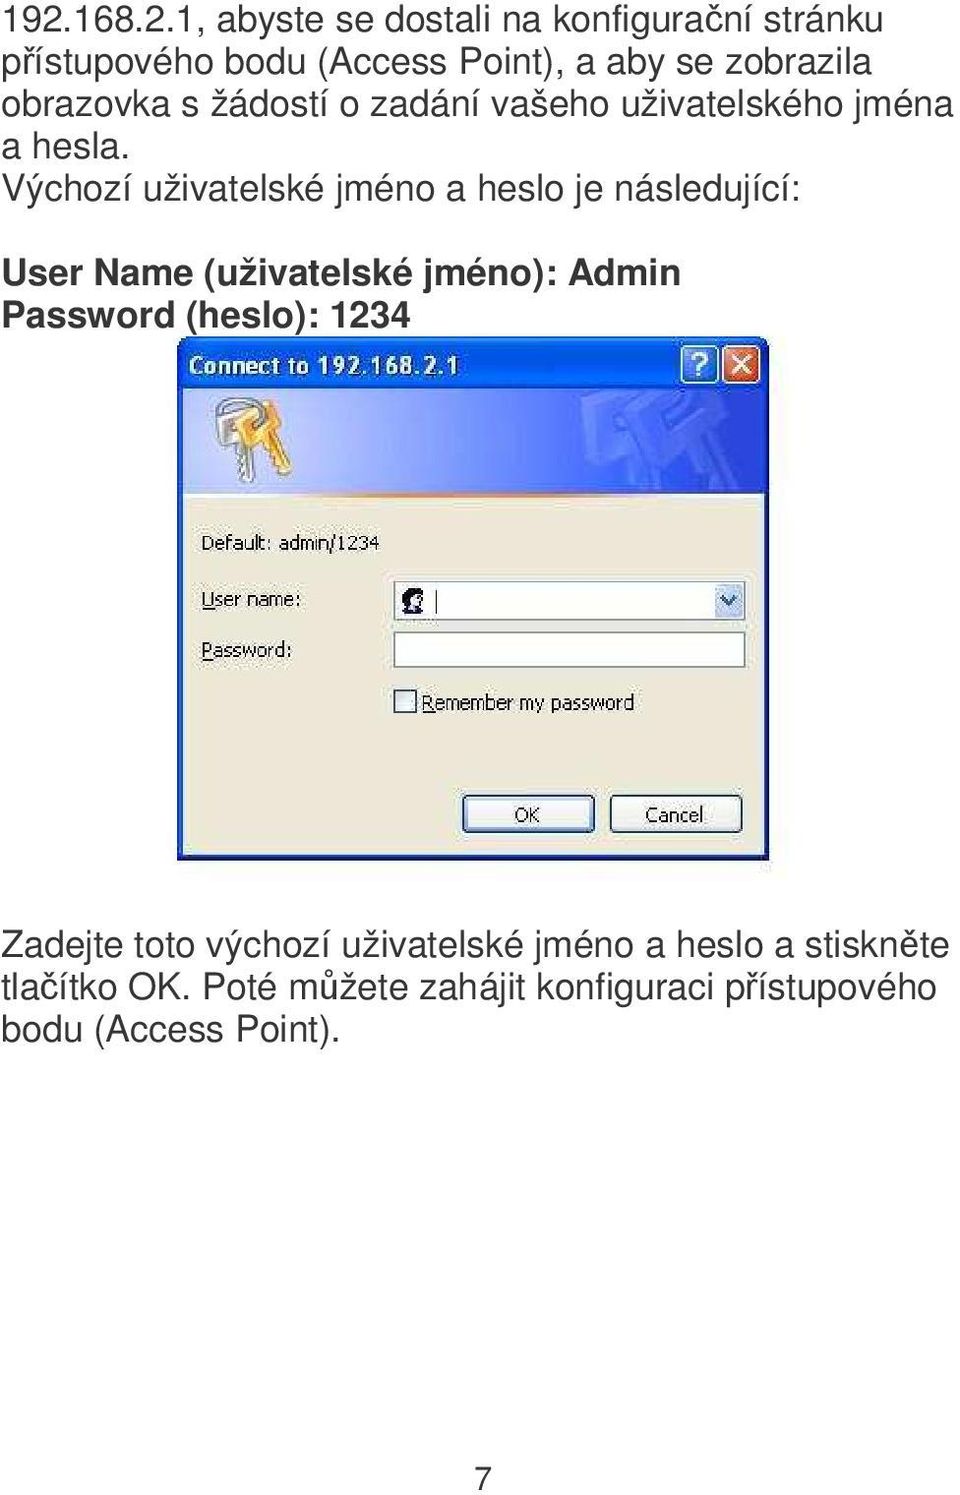 Výchozí uživatelské jméno a heslo je následující: User Name (uživatelské jméno): Admin Password